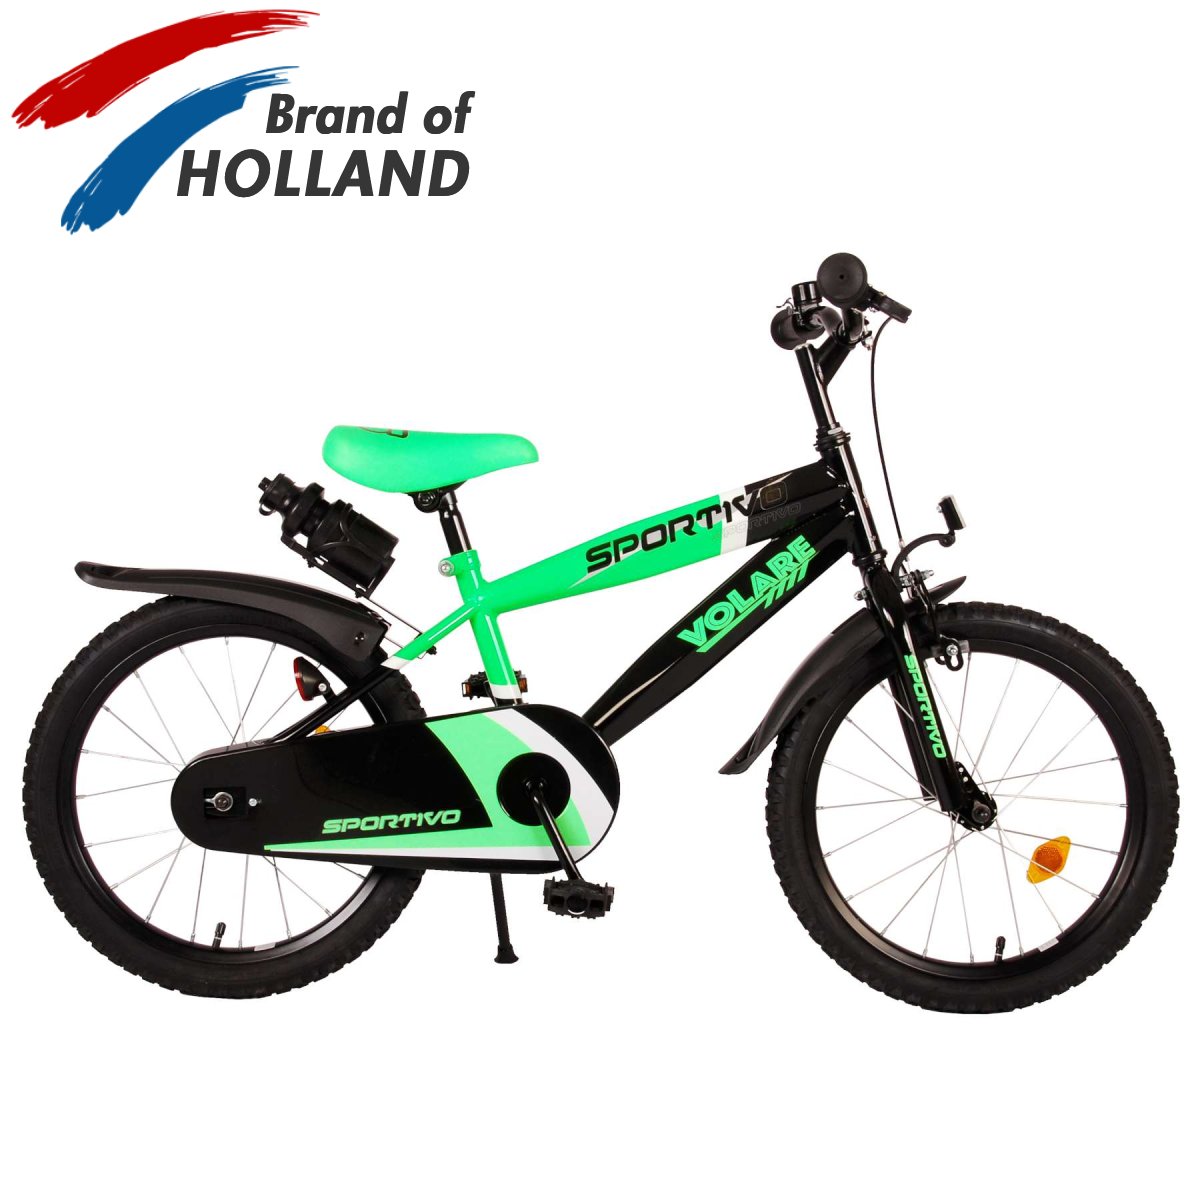 Vaikiškas dviratis VOLARE Sportivo, 18 dydis, žalios sp.